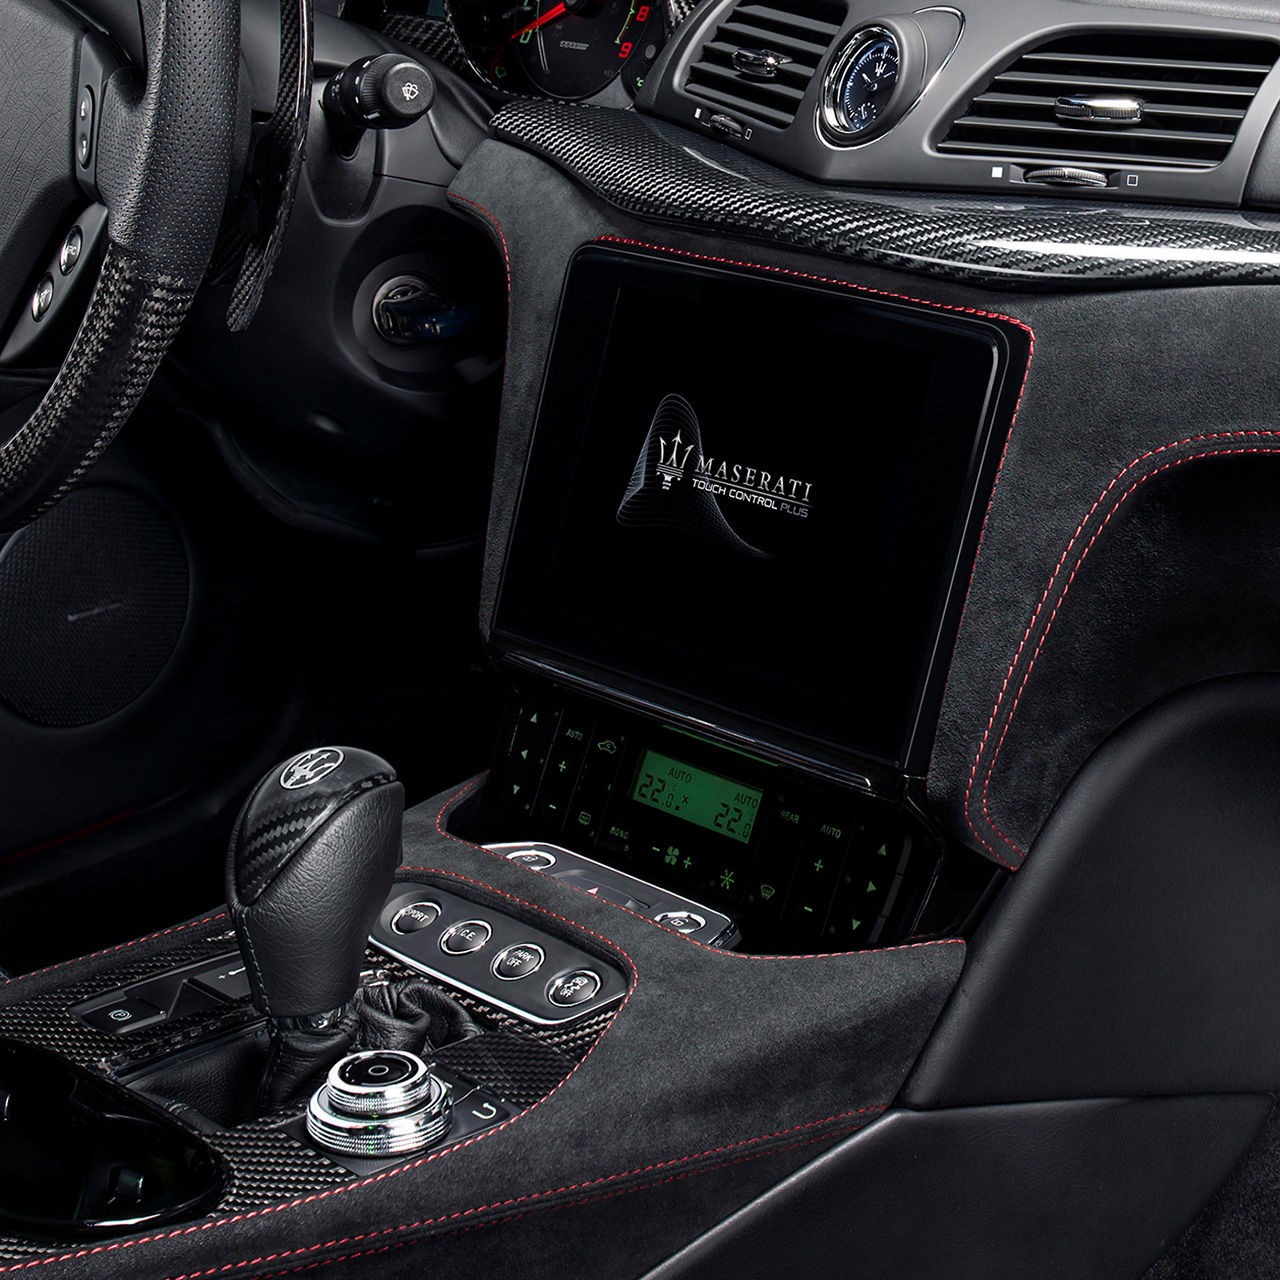 Maserati GranTurismo Innenausstattung - Kupplung und Display Detail - Infotainment und App-Connectivity